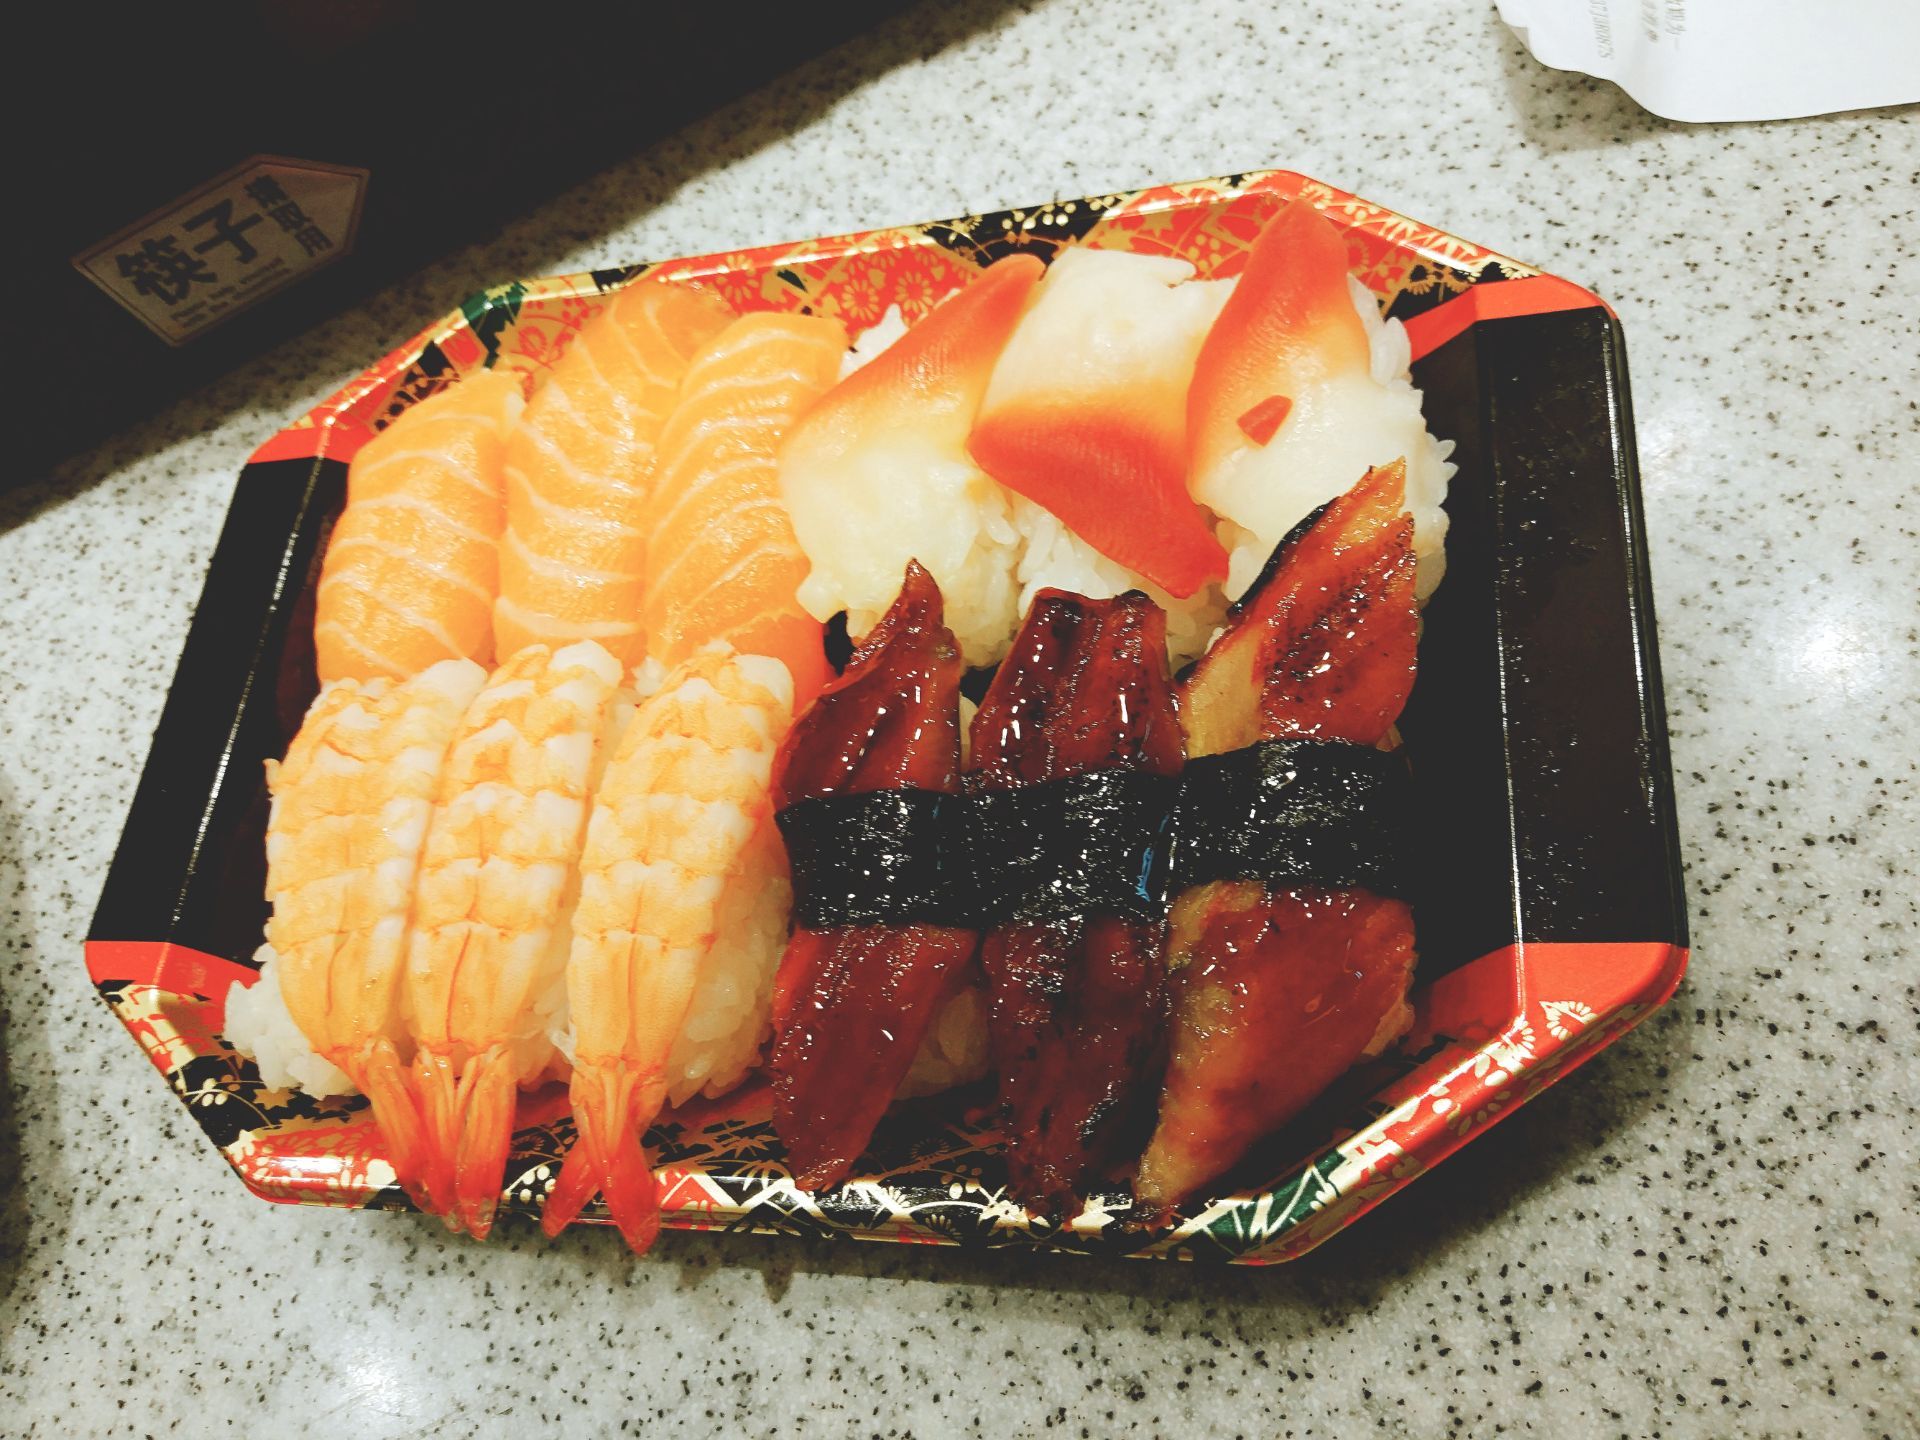 2023争鲜外带寿司(上水店)美食餐厅,蟹子寿司尤其好吃。口感鲜美...【去哪儿攻略】